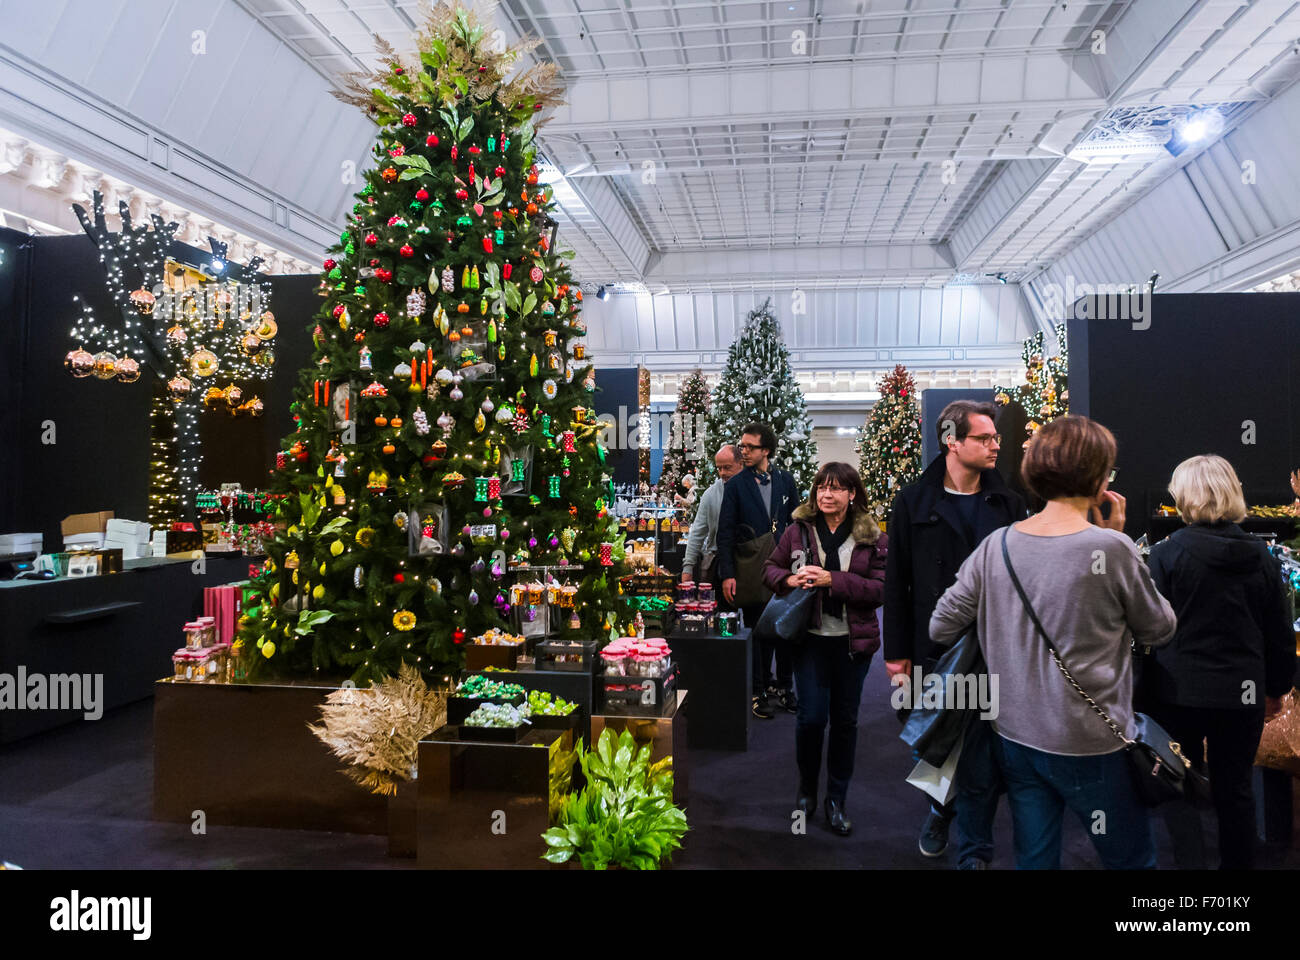 Le Bon Marche Department store, Christmas decoration, Paris, France, Europe  Stock Photo - Alamy